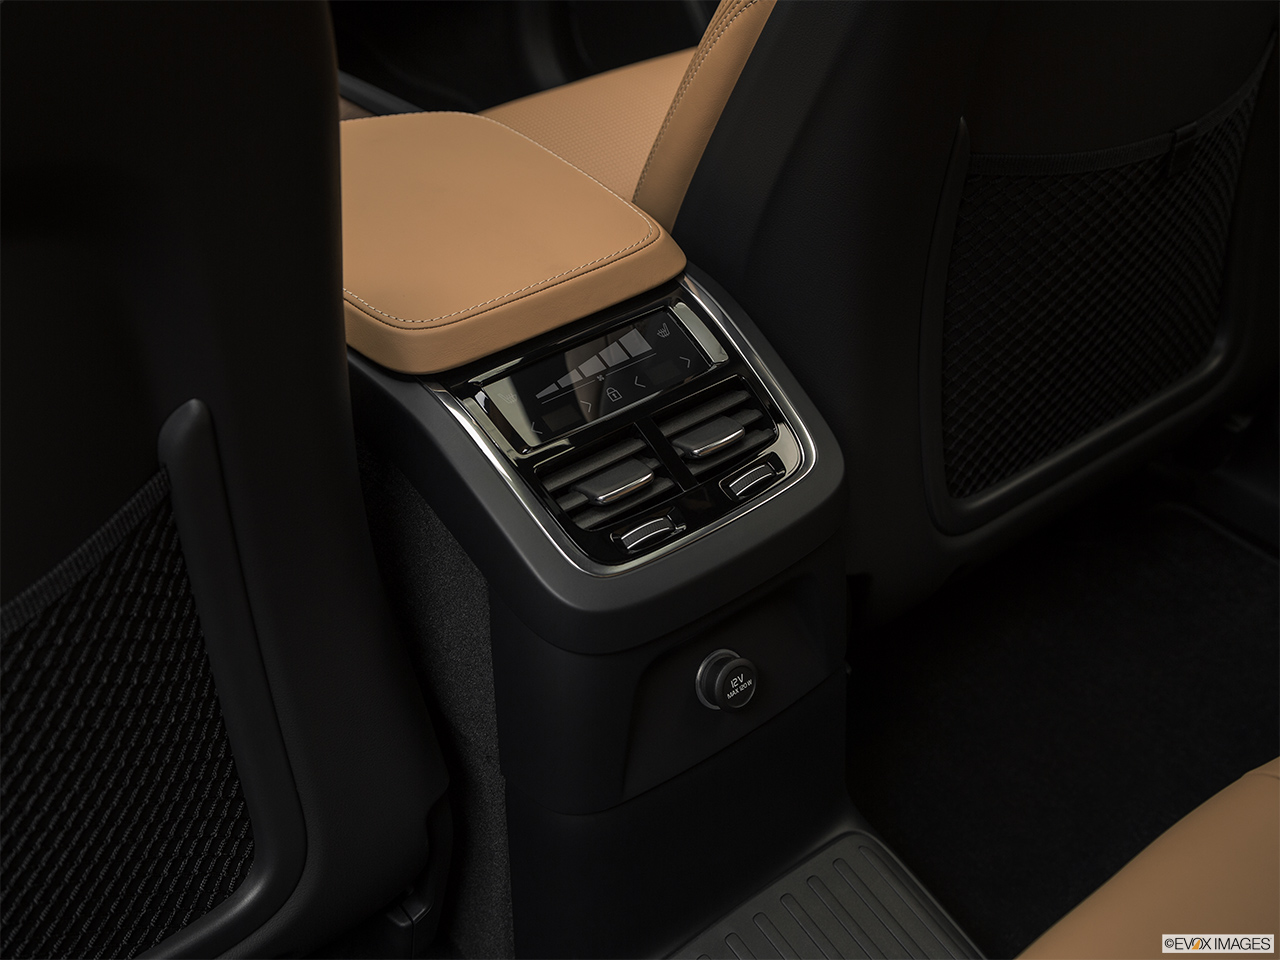 2018 Volvo XC90 T8 Inscription eAWD Plug-in Hybrid Rear A/C controls. 